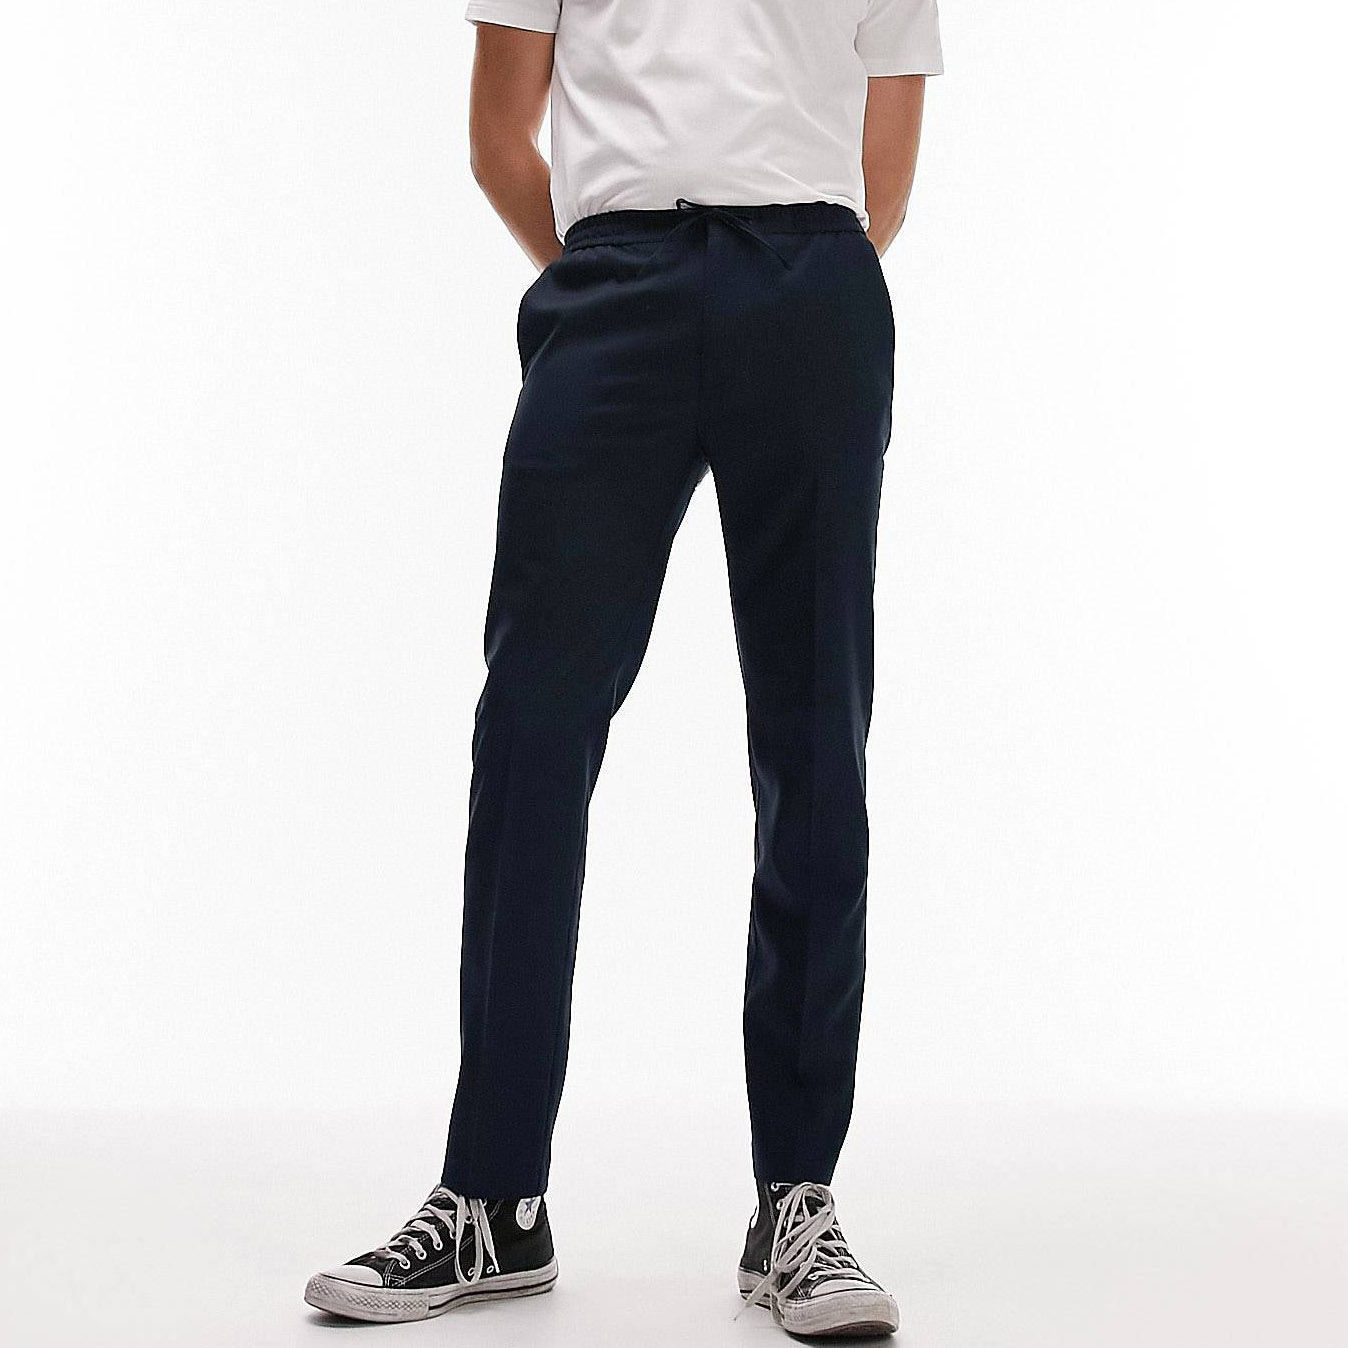 Брюки Topman Skinny Smart With Elasticated Waistband, темно-синий брюки zara cropped with elasticated waistband бежевый